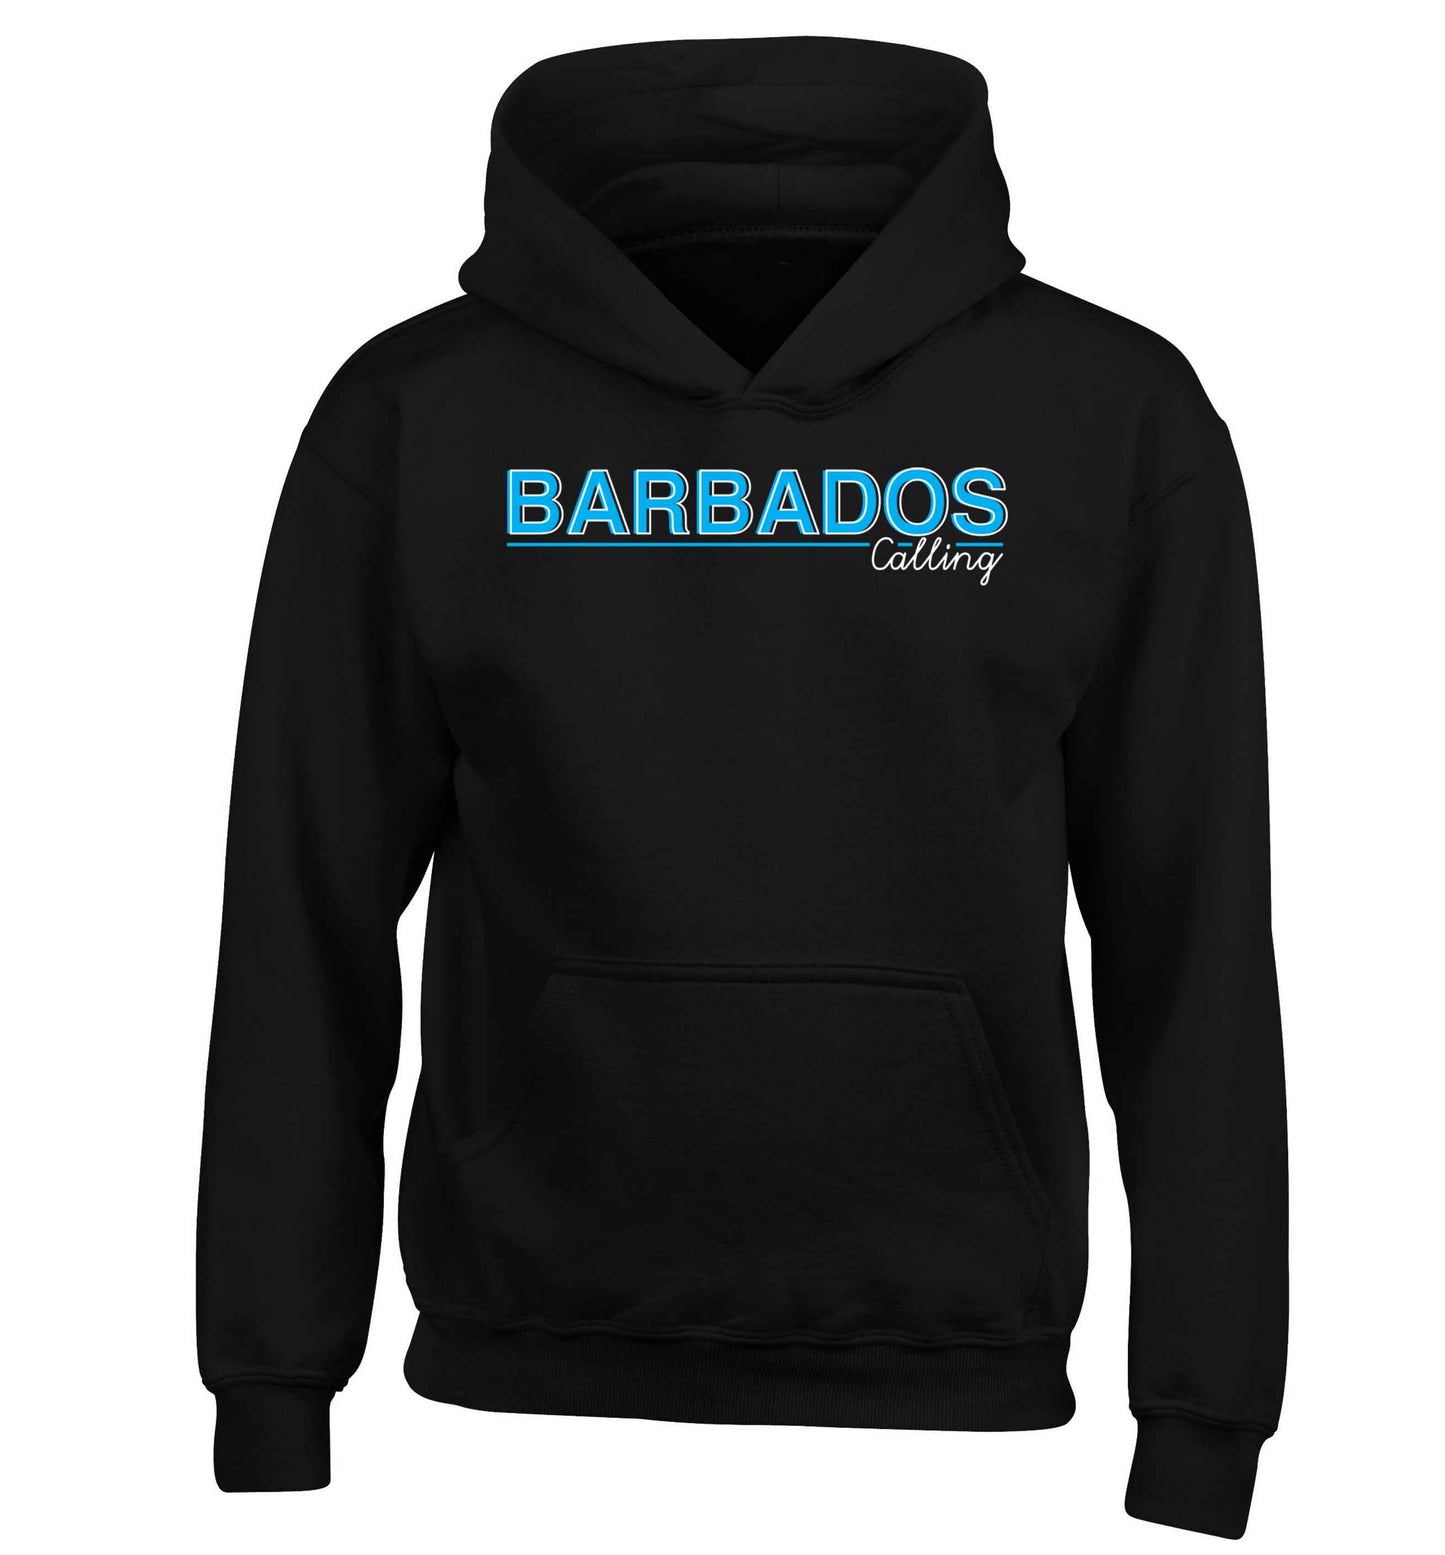 Barbados calling children's black hoodie 12-13 Years